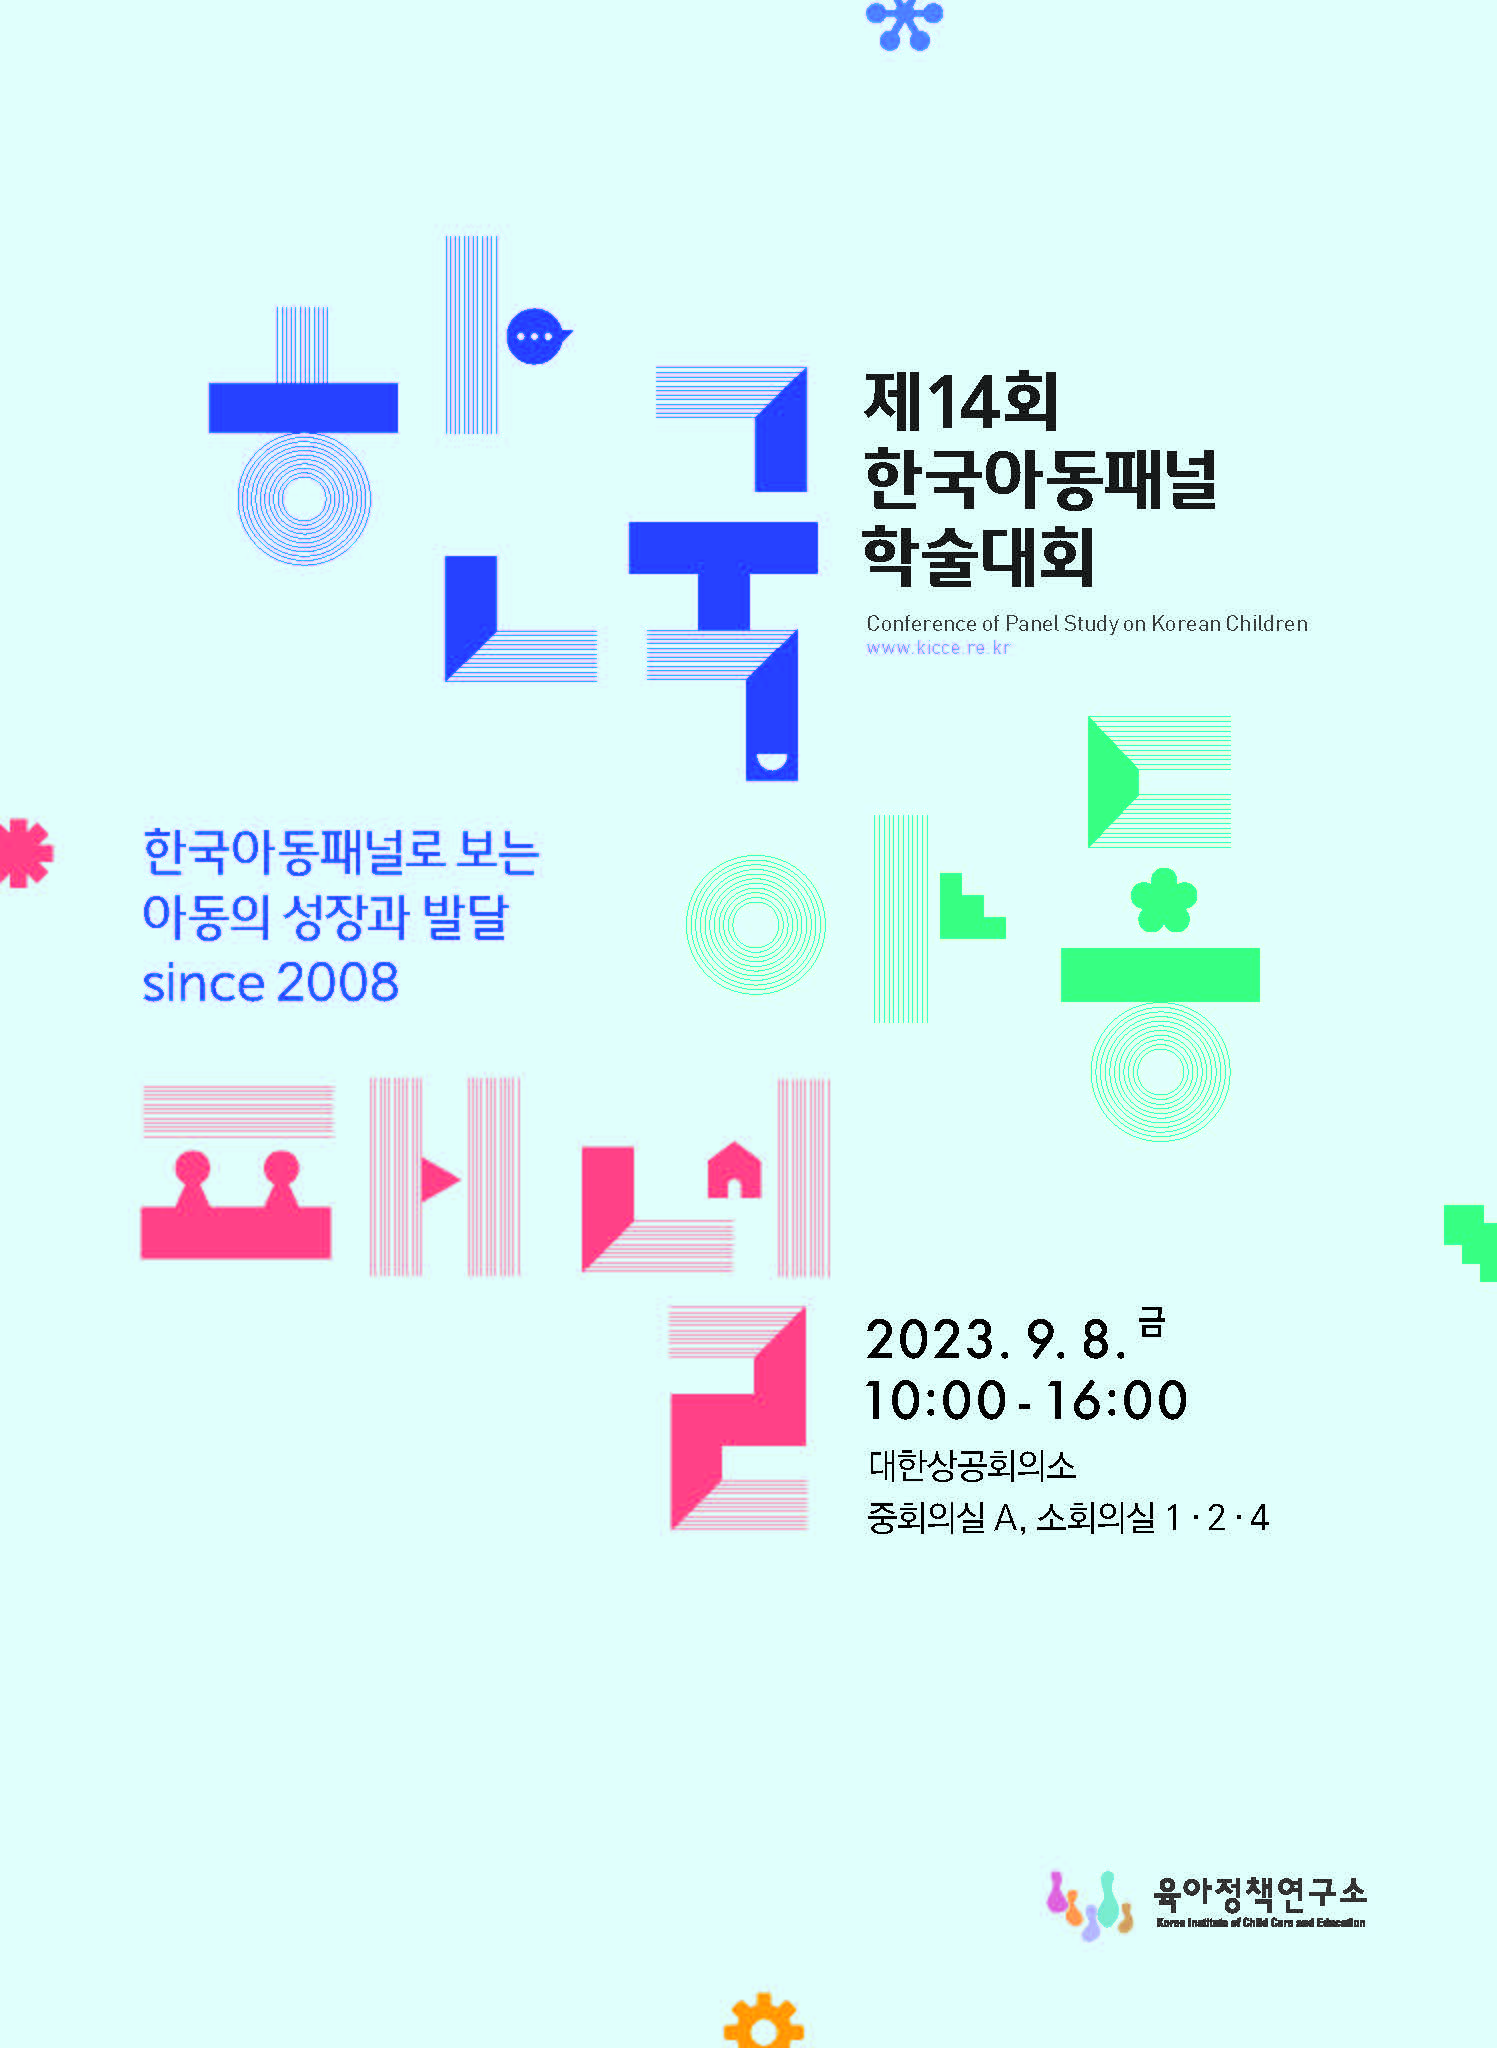 제14회 한국아동패널 학술대회 자료집 관련 이미지 입니다.